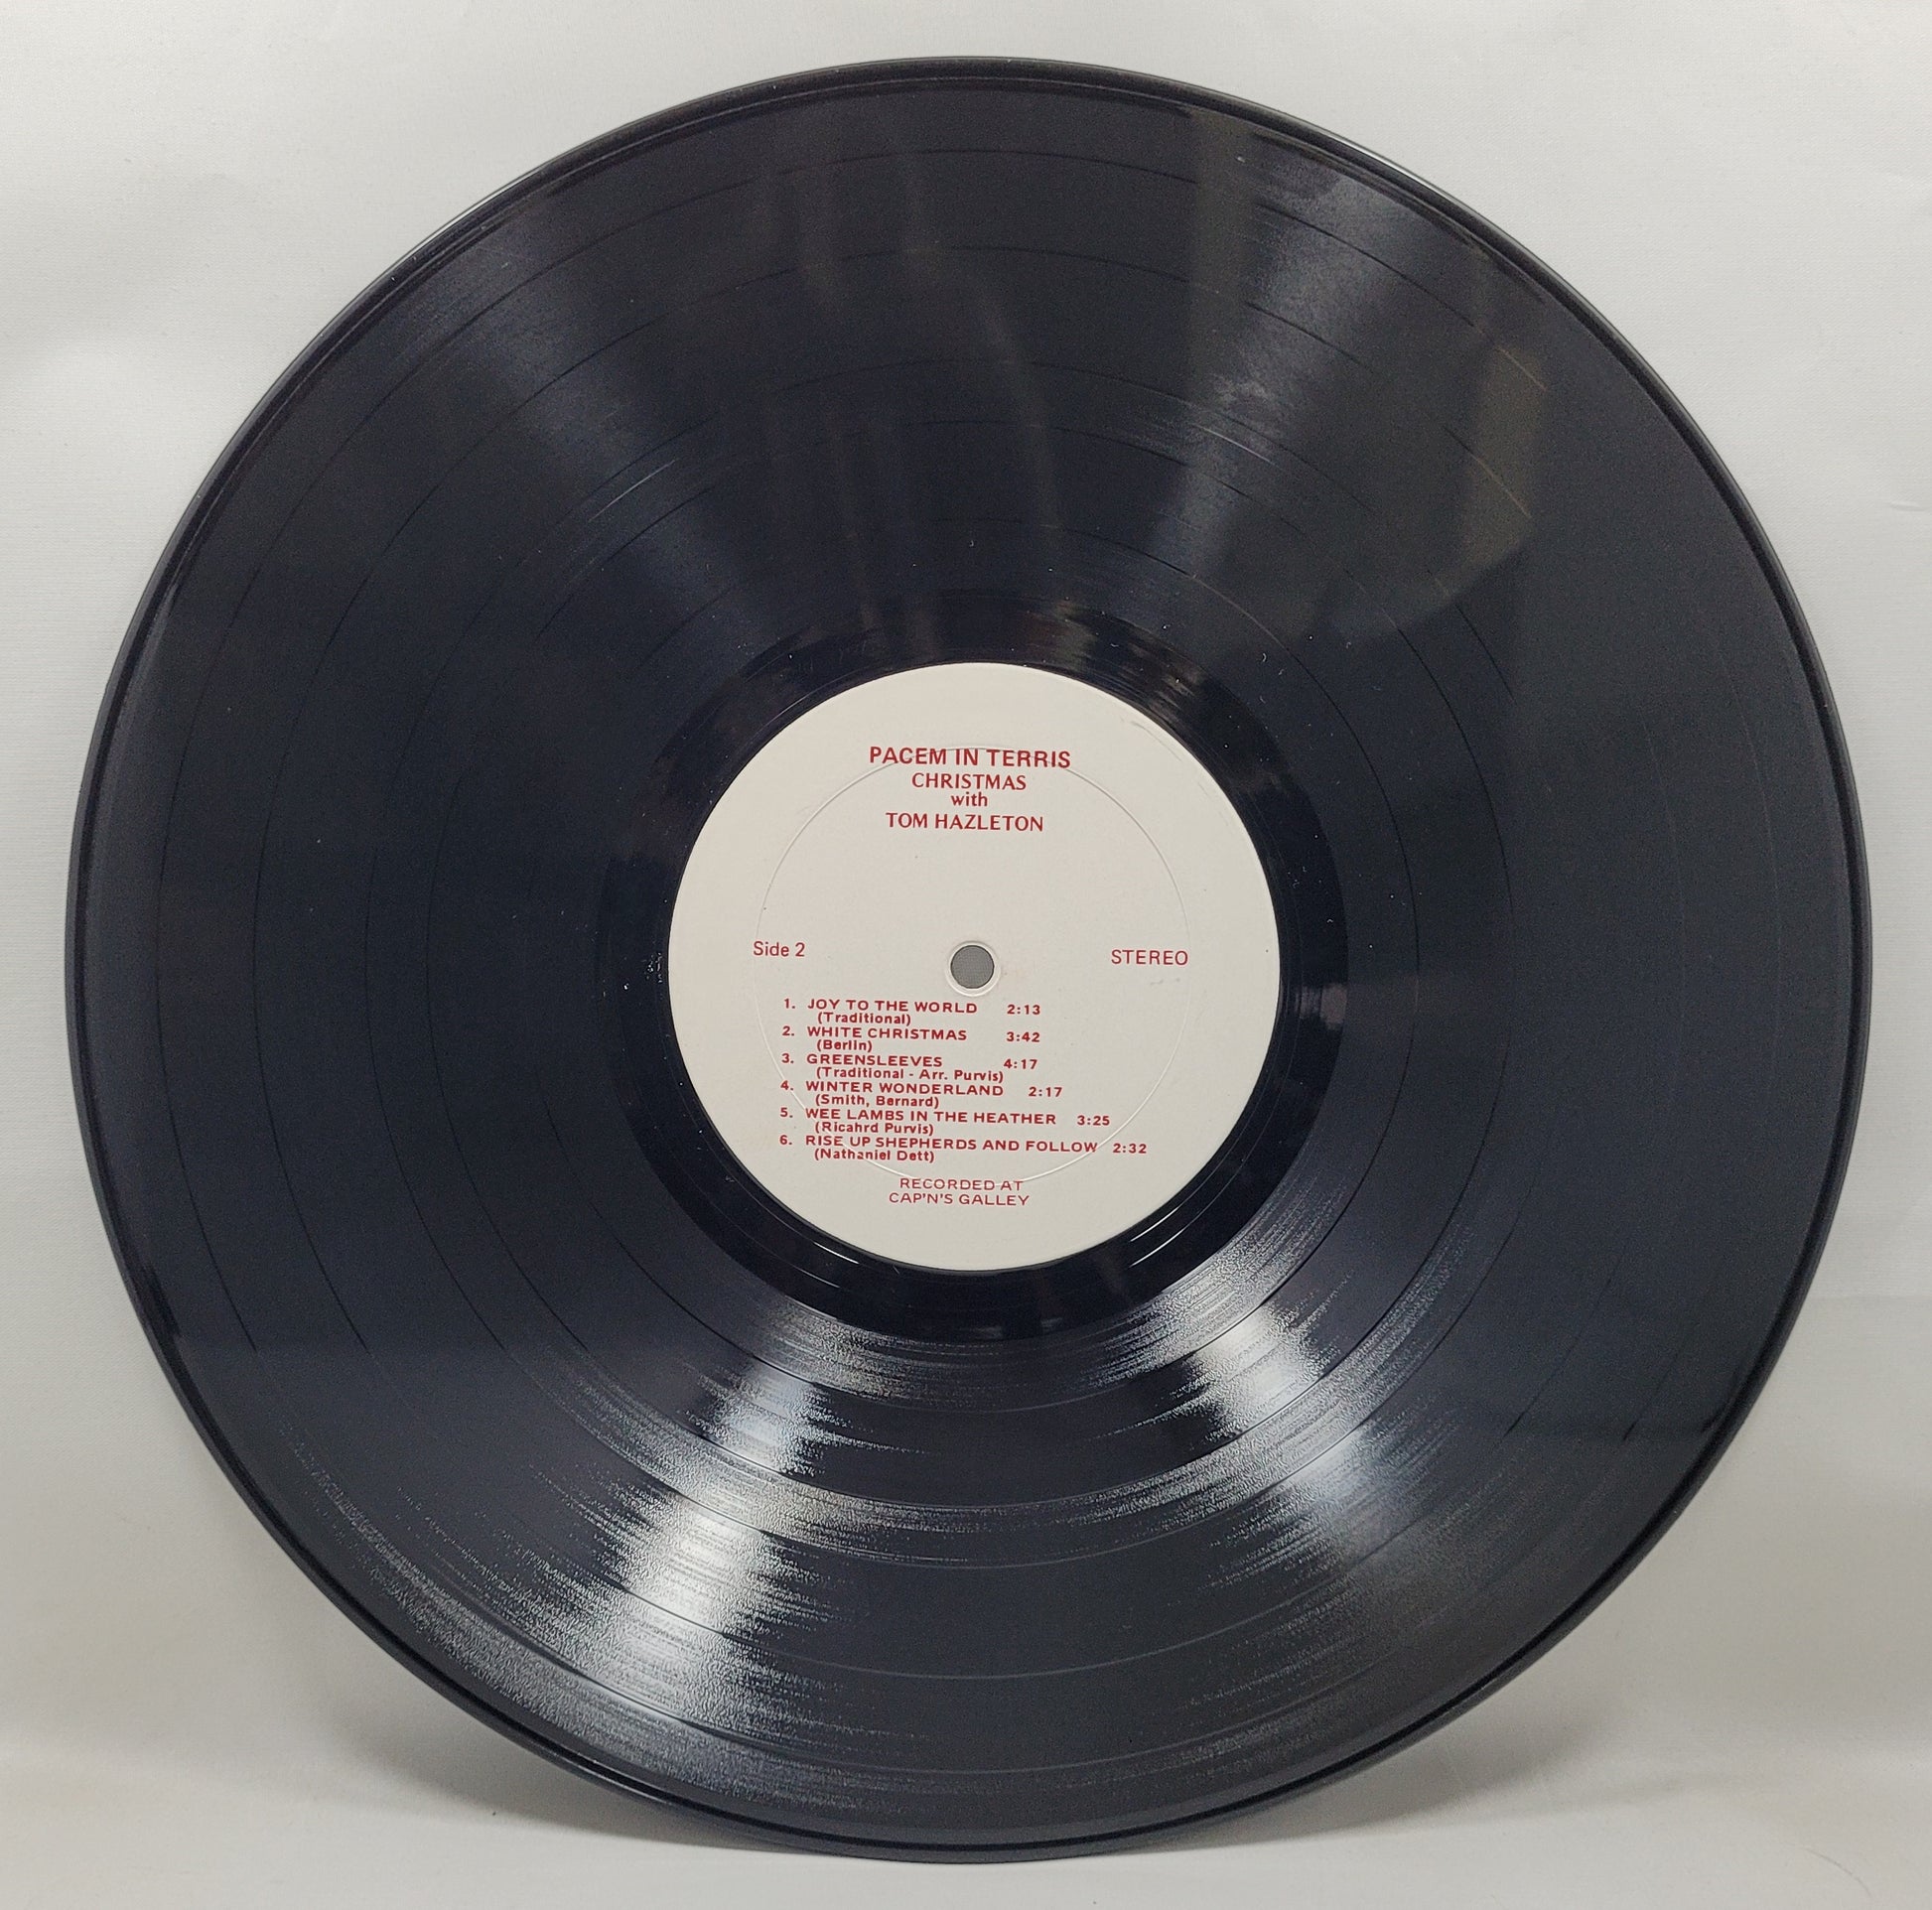 Tom Hazleton - Pacem in Terris [Used Vinyl Record LP]